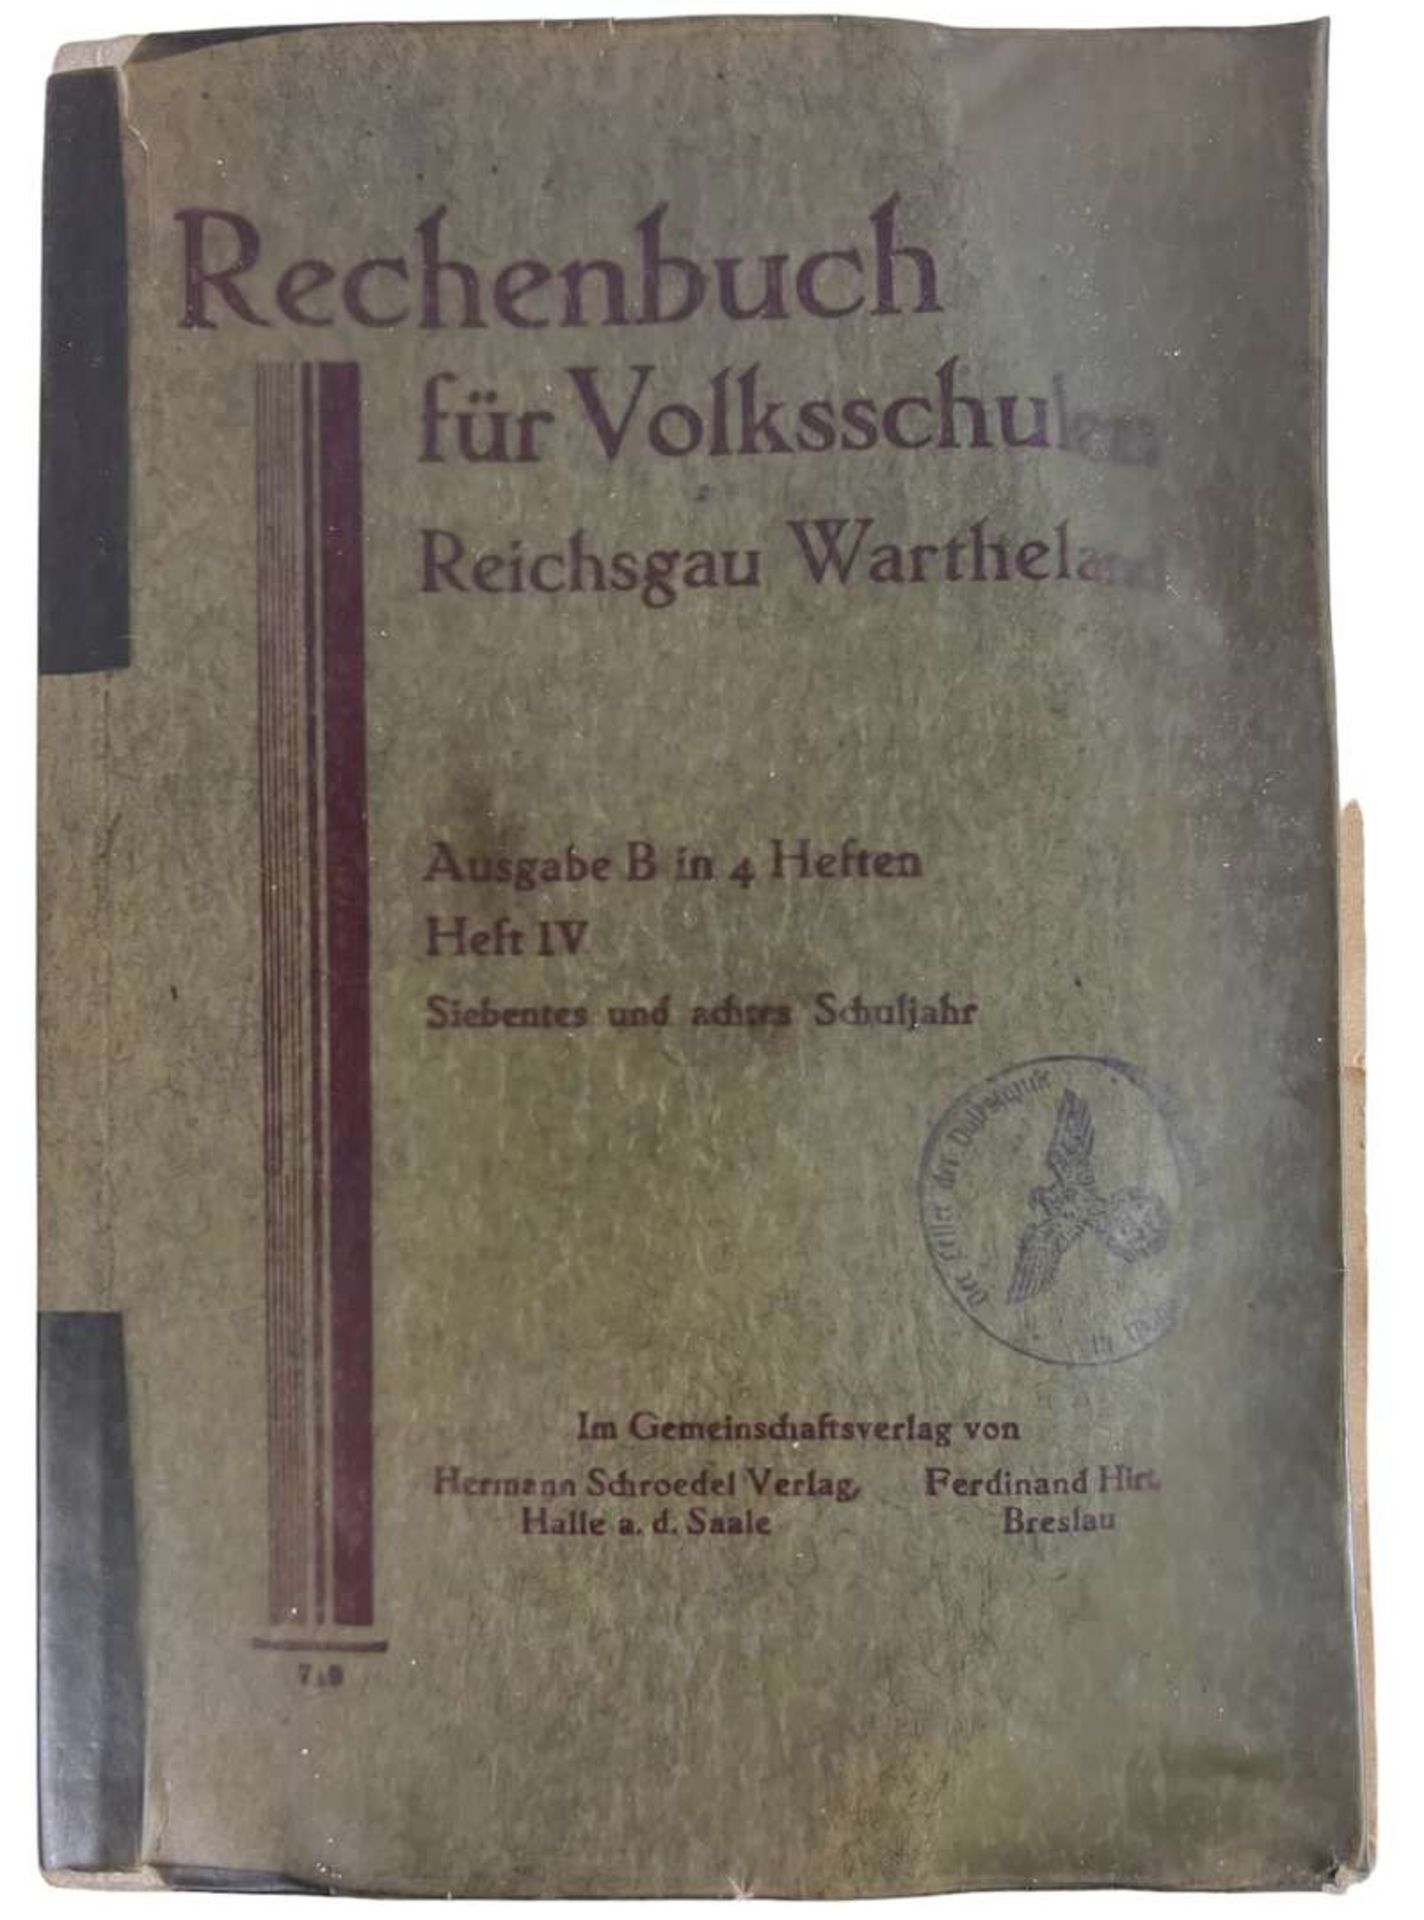 WW2 German Book "Rechenbuch fur Volksschulen, Reichsgau Wartheland"